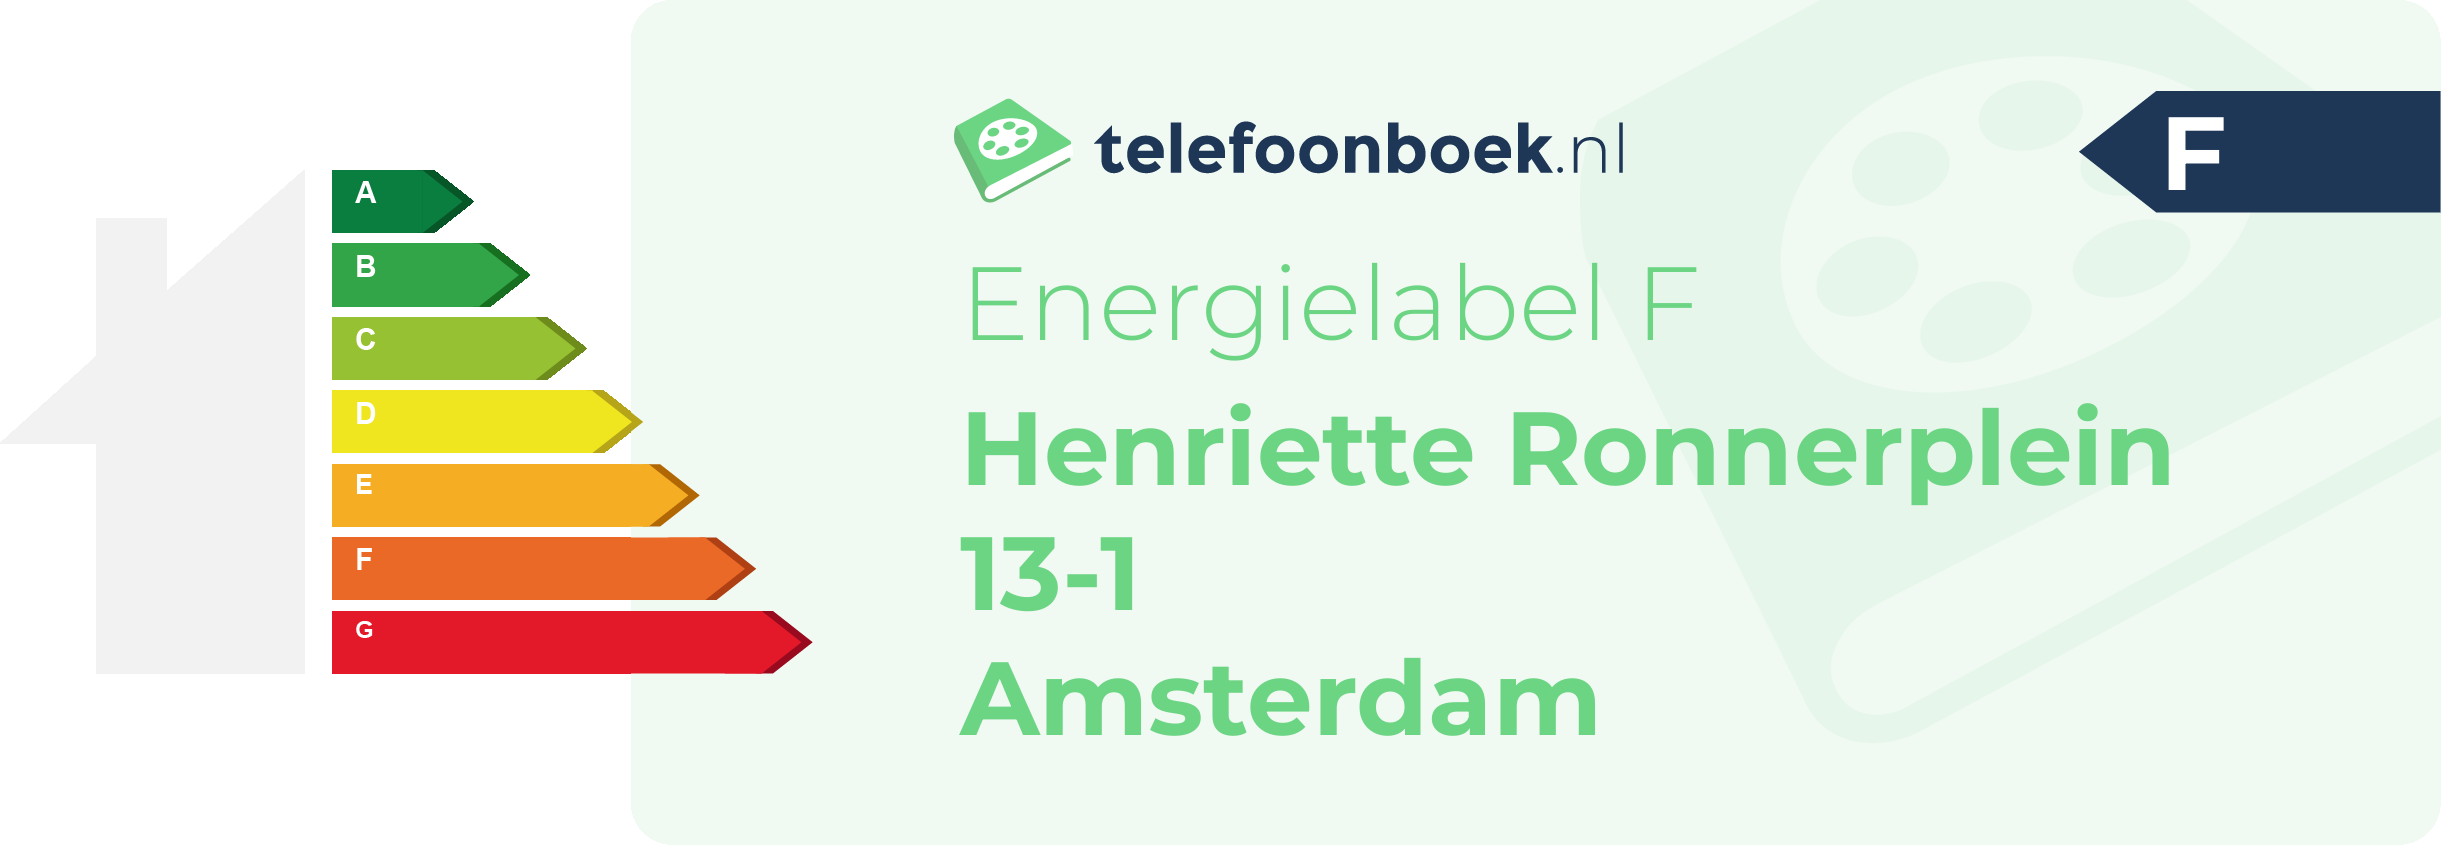 Energielabel Henriette Ronnerplein 13-1 Amsterdam